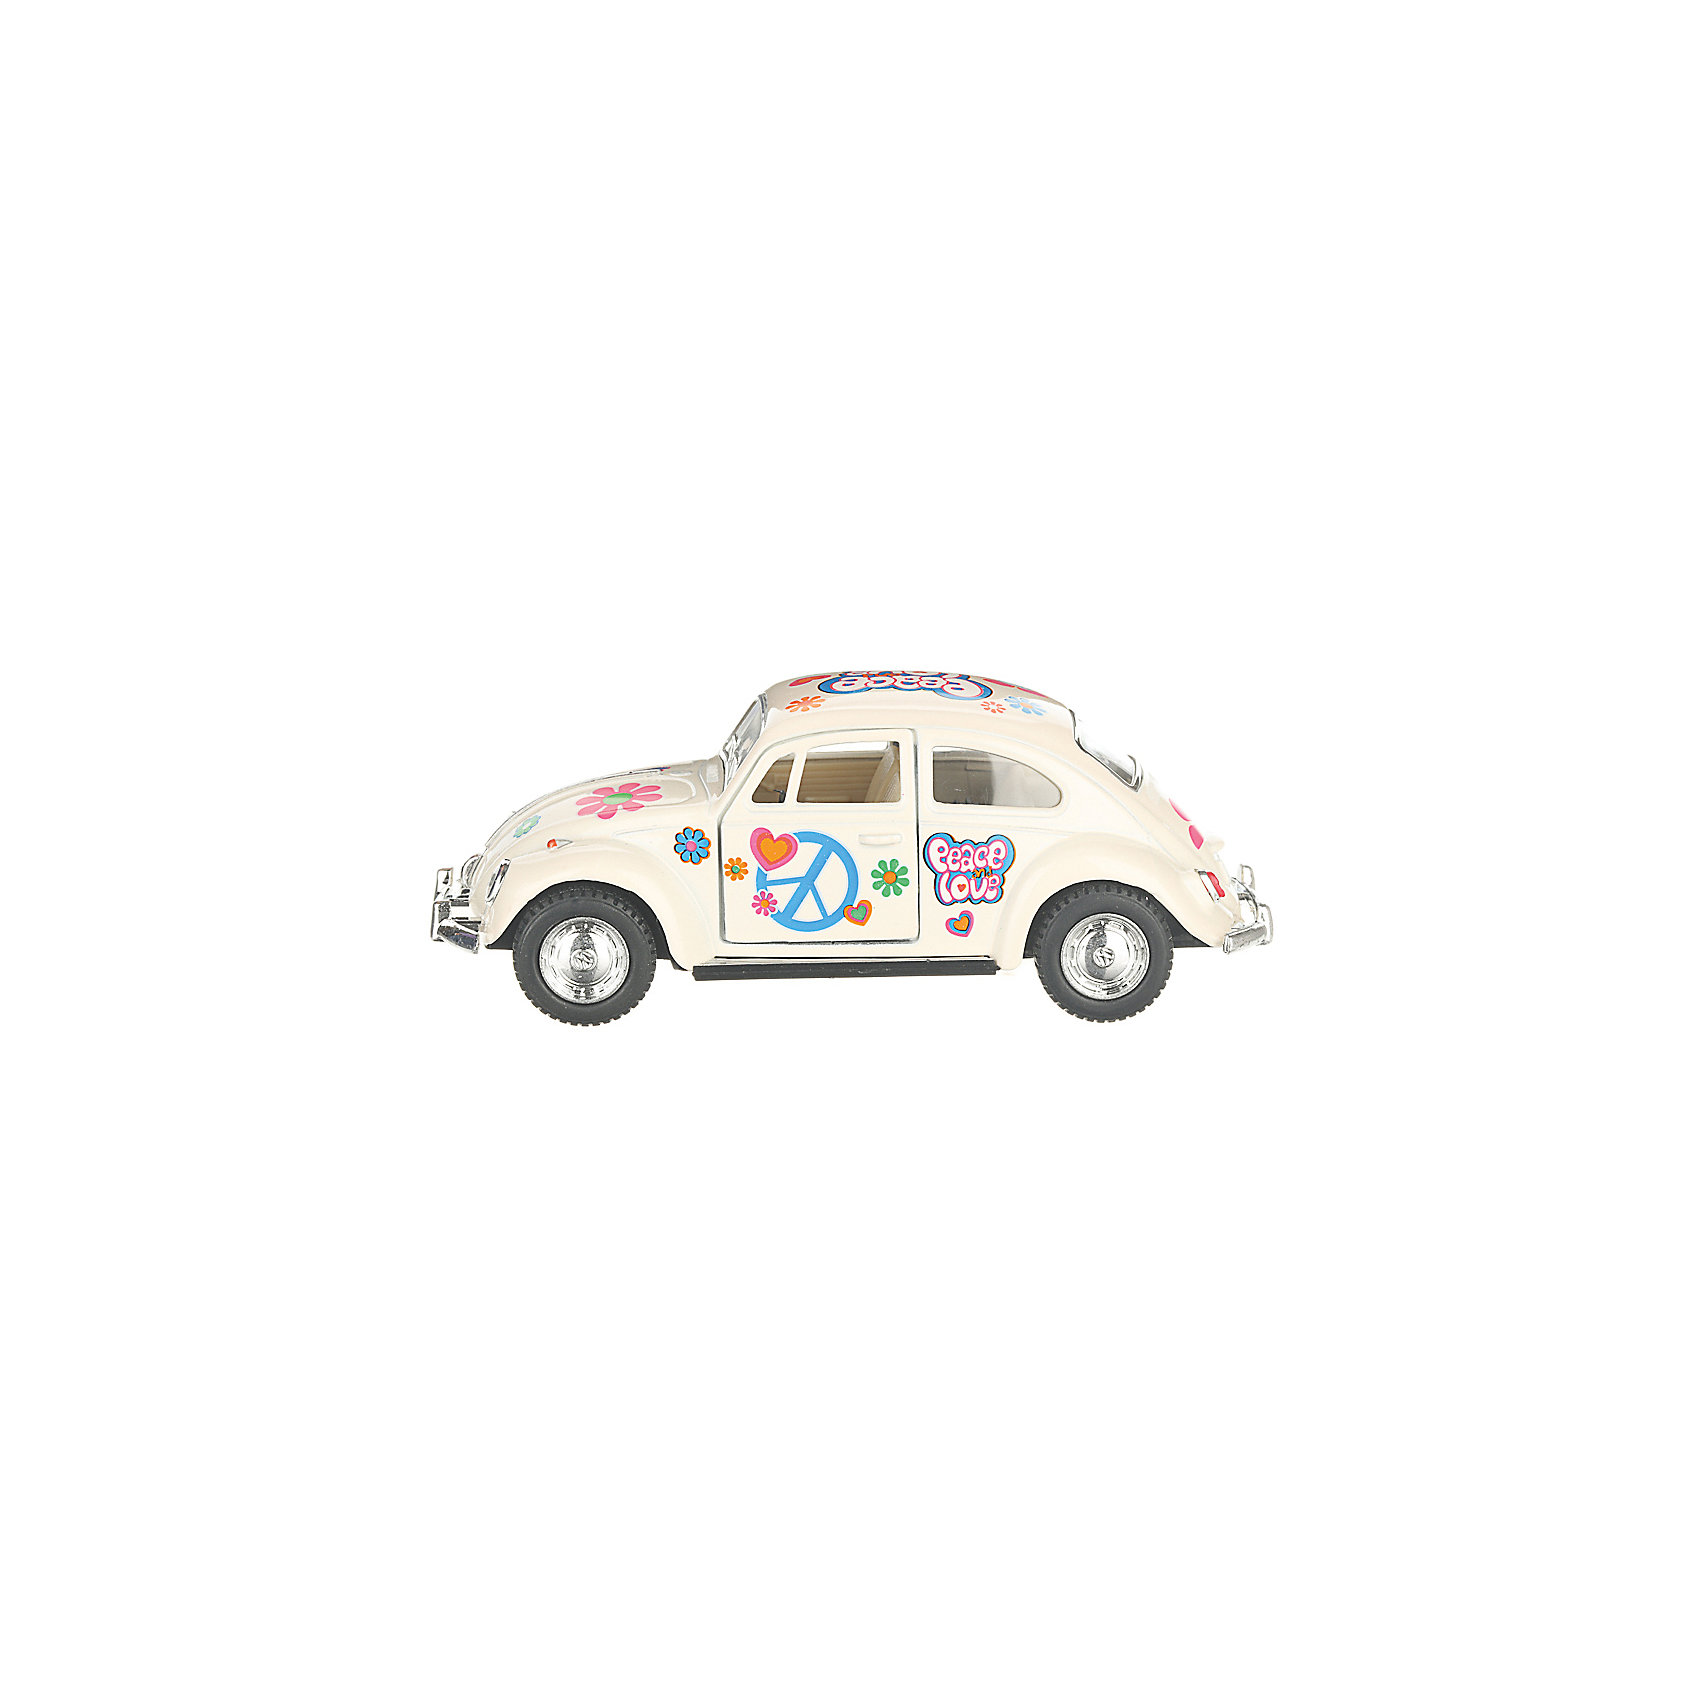 Коллекционная машинка 1967 Volkswagen Classical Beetle, белая Serinity Toys 13233038